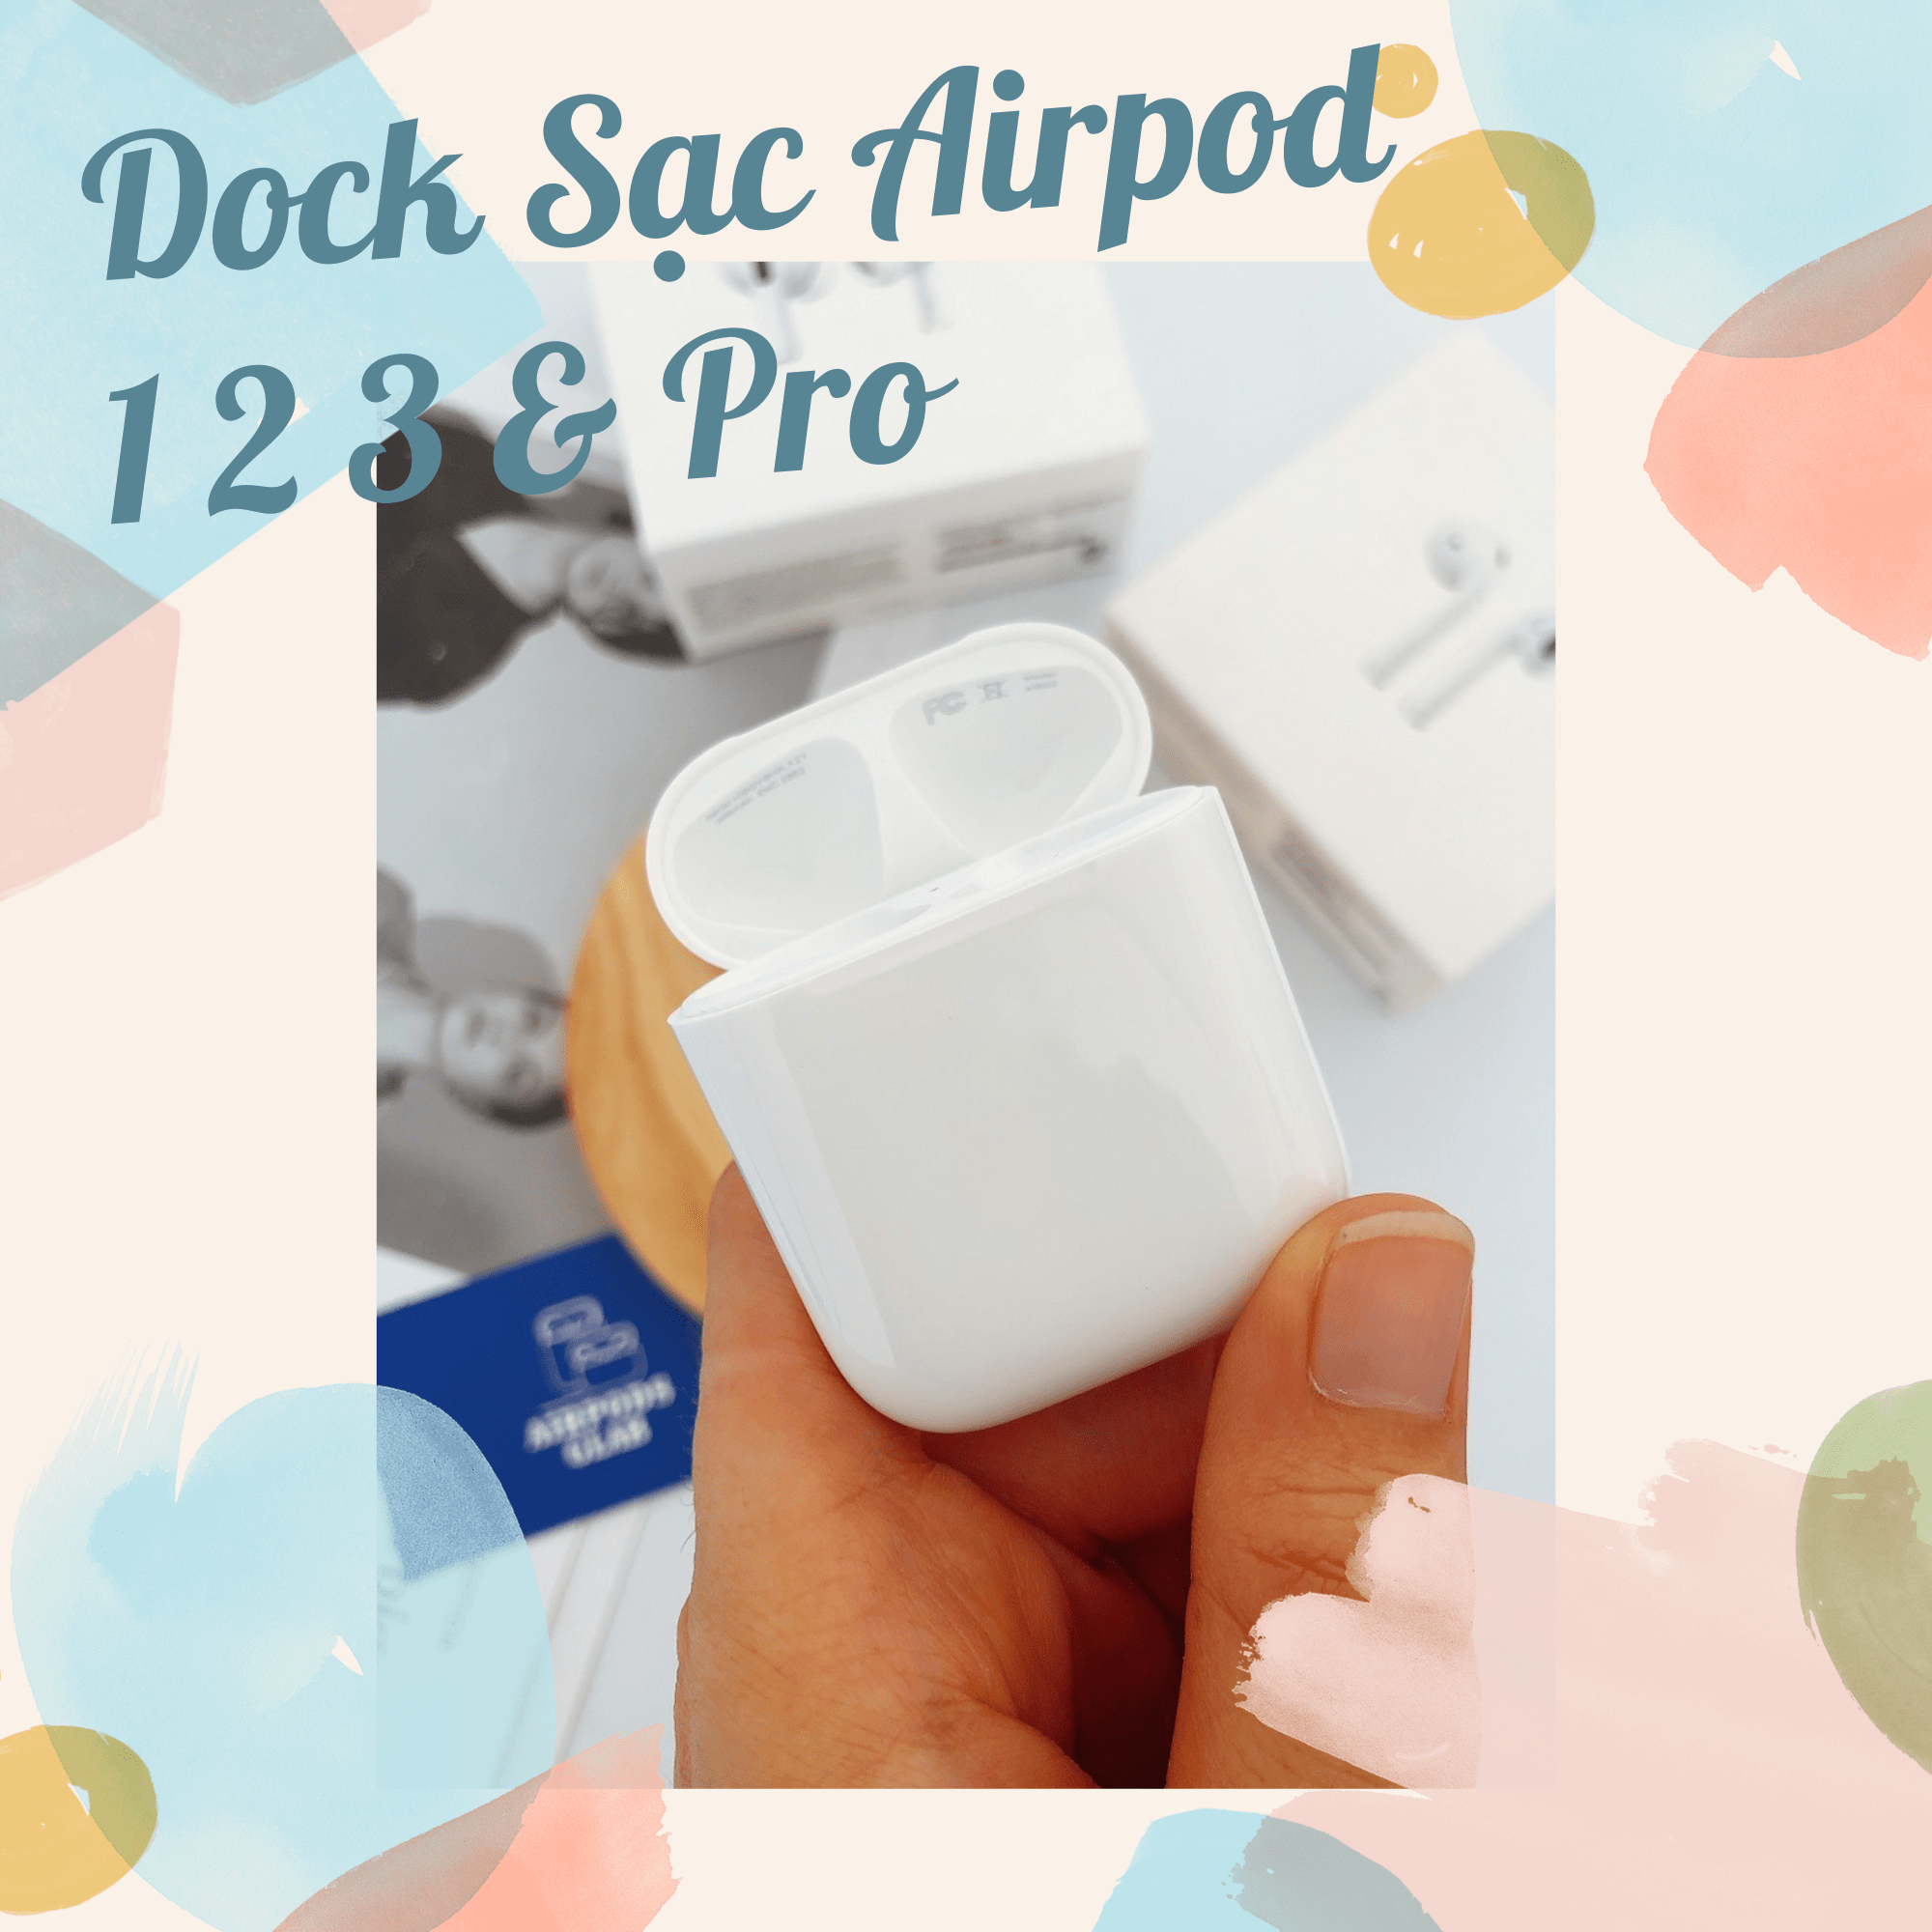 dock-sac-airpod